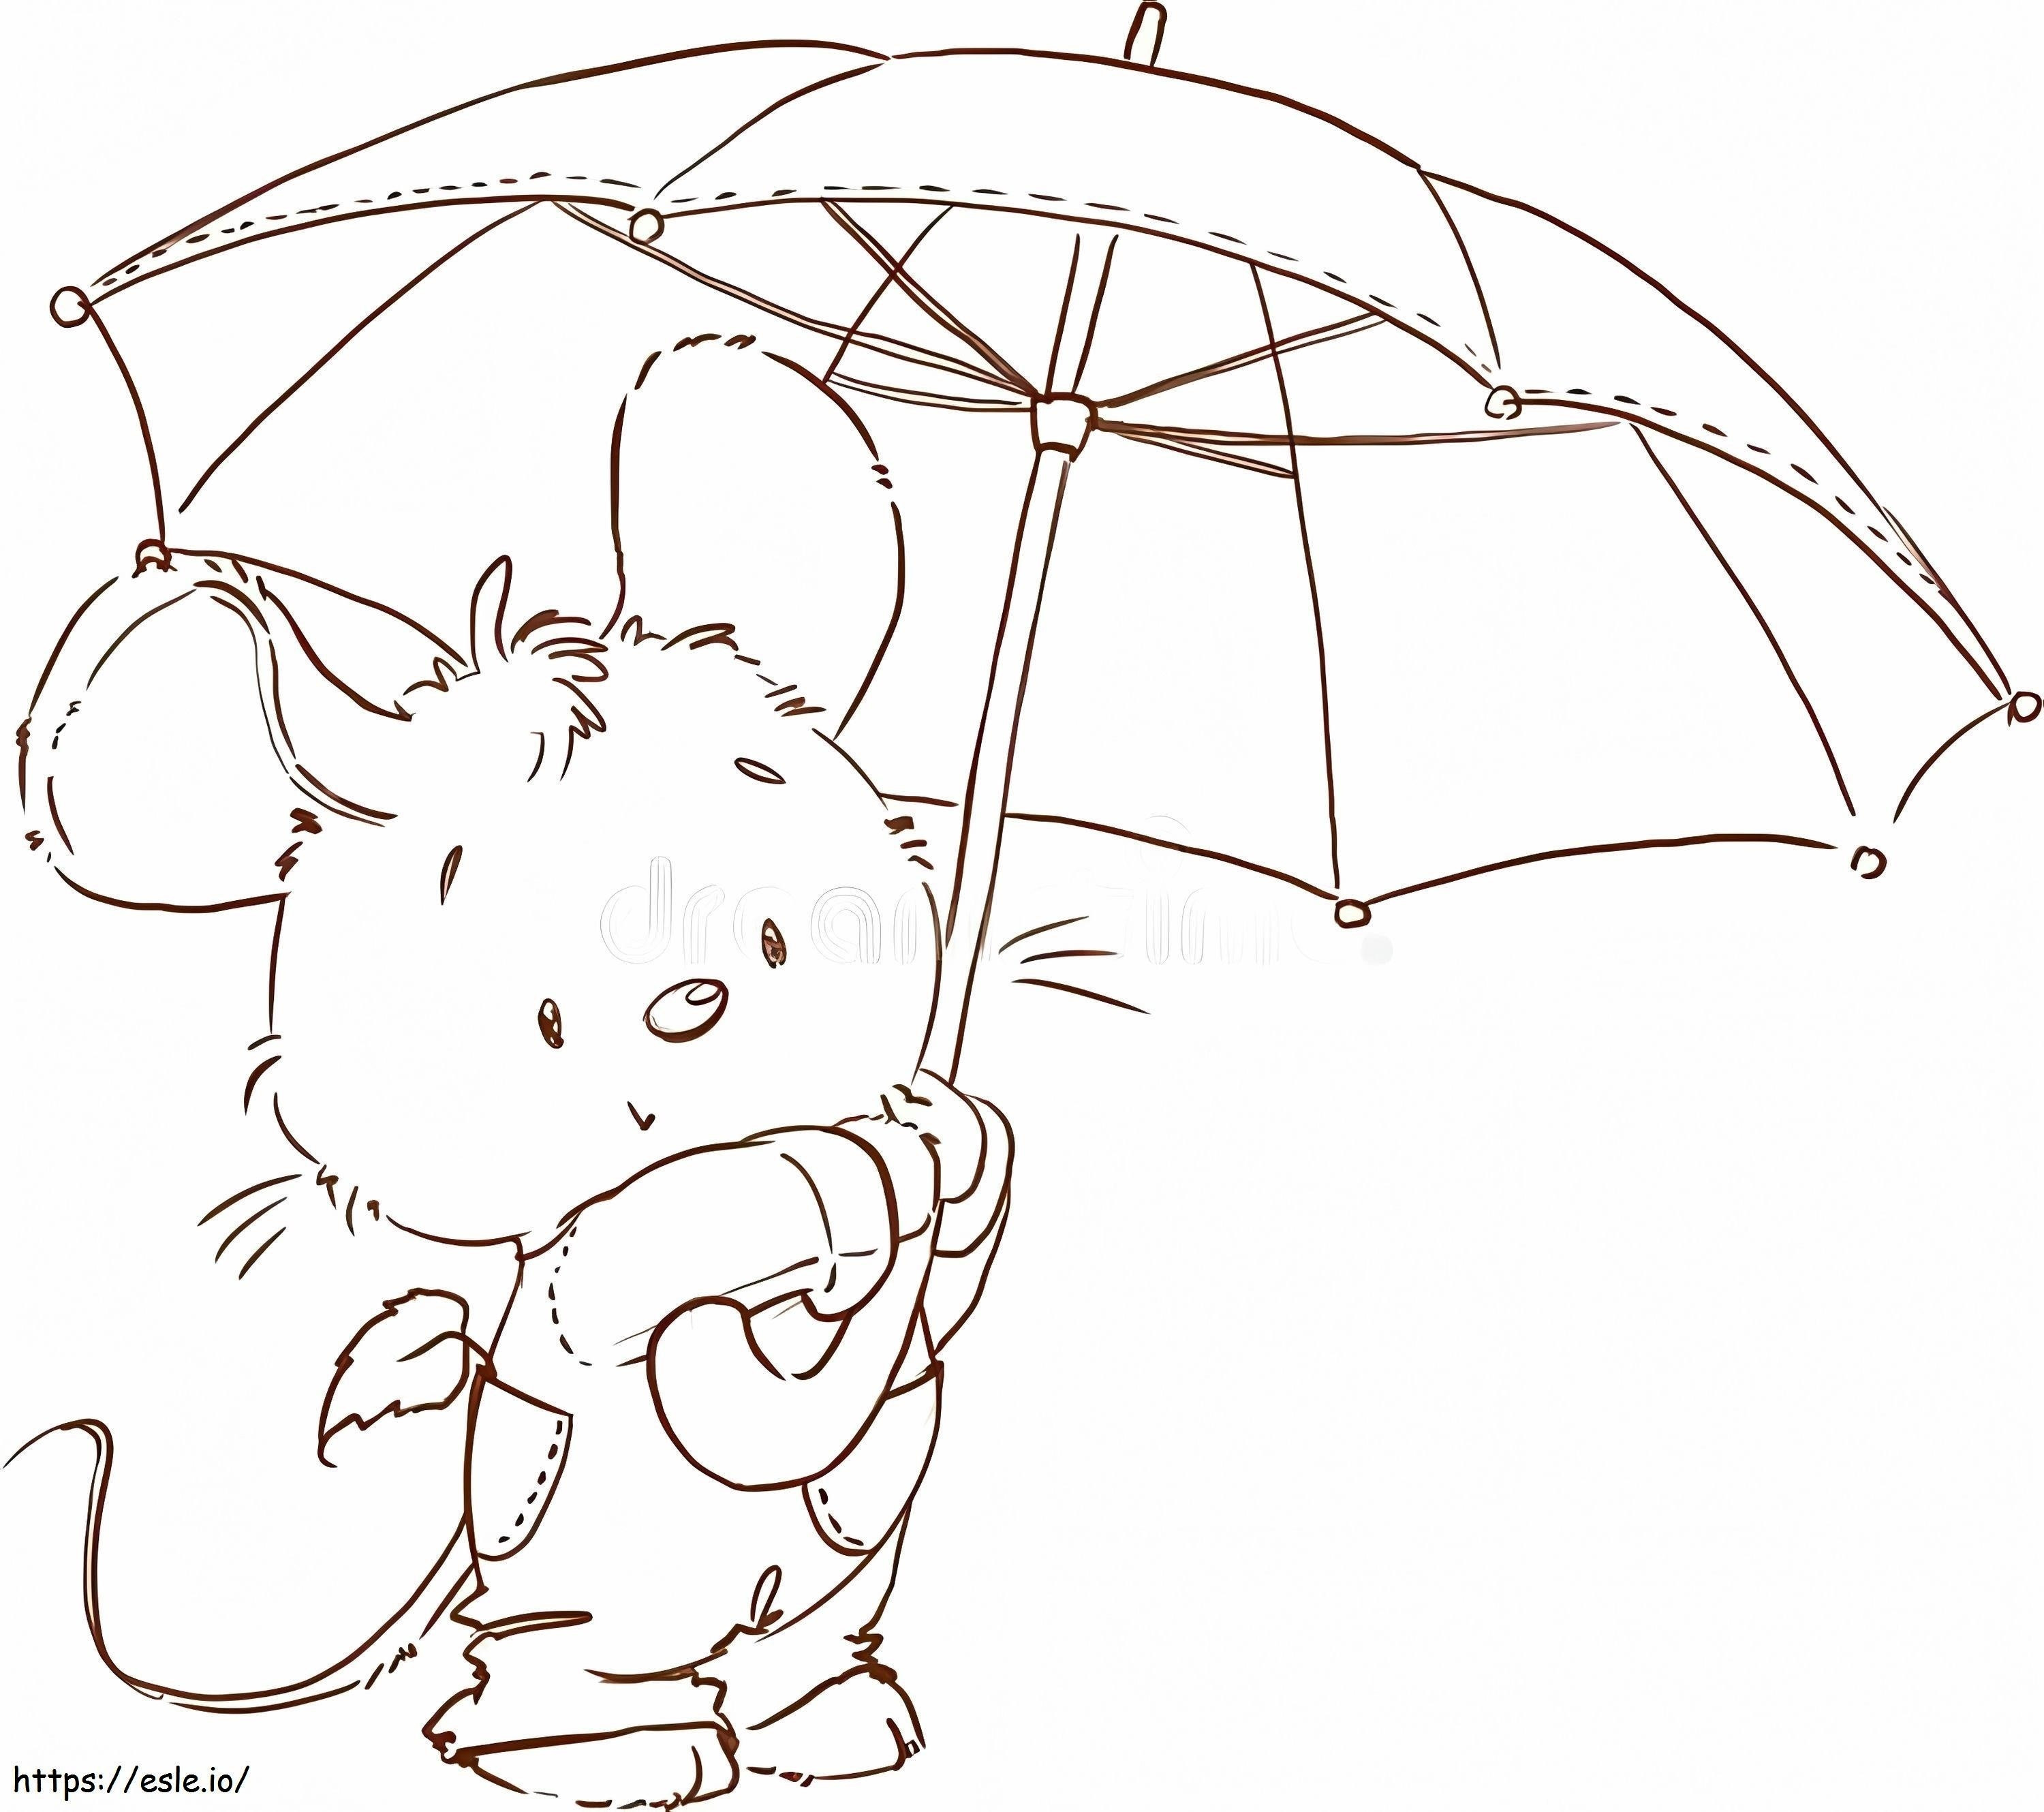 Maus mit Regenschirm ausmalbilder